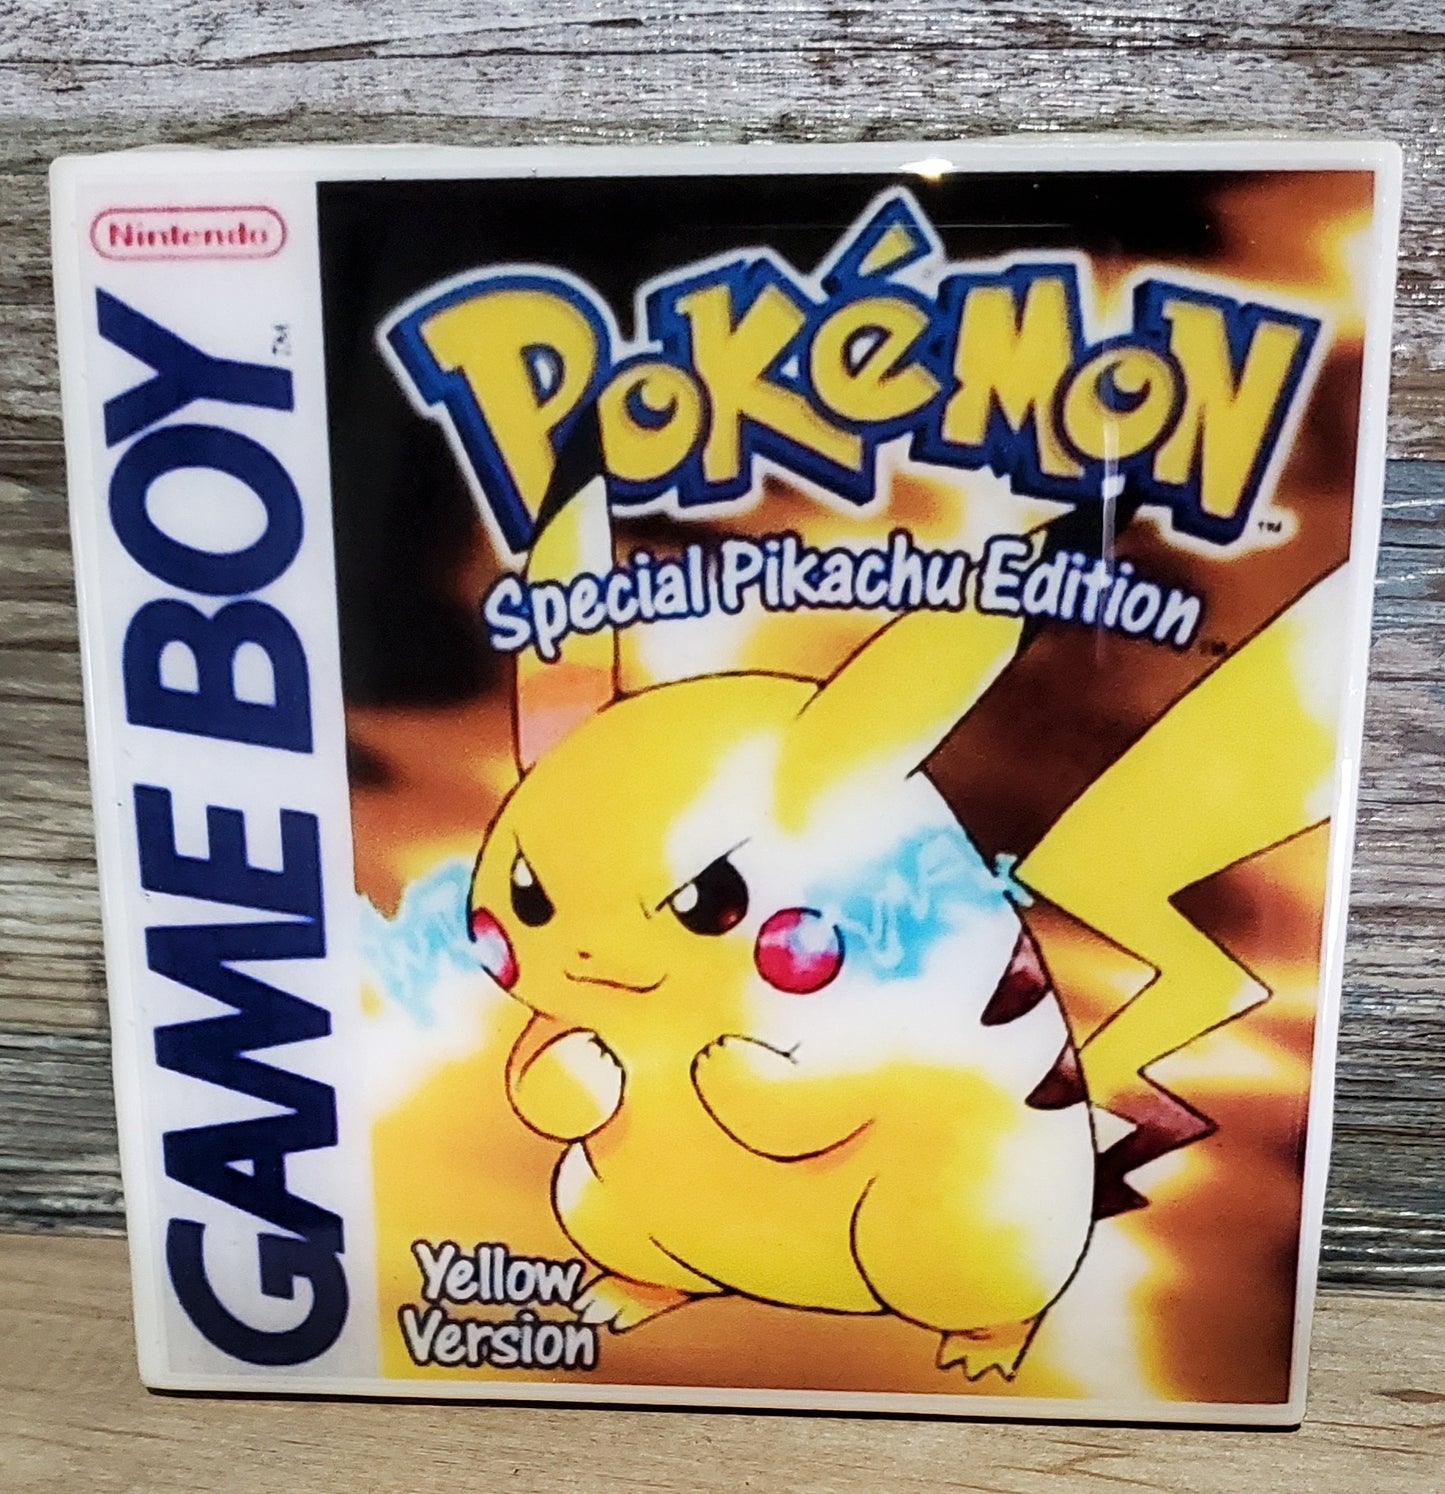 Pokemon Yellow Gameboy Ceramic Coaster Tile 4" x 4"